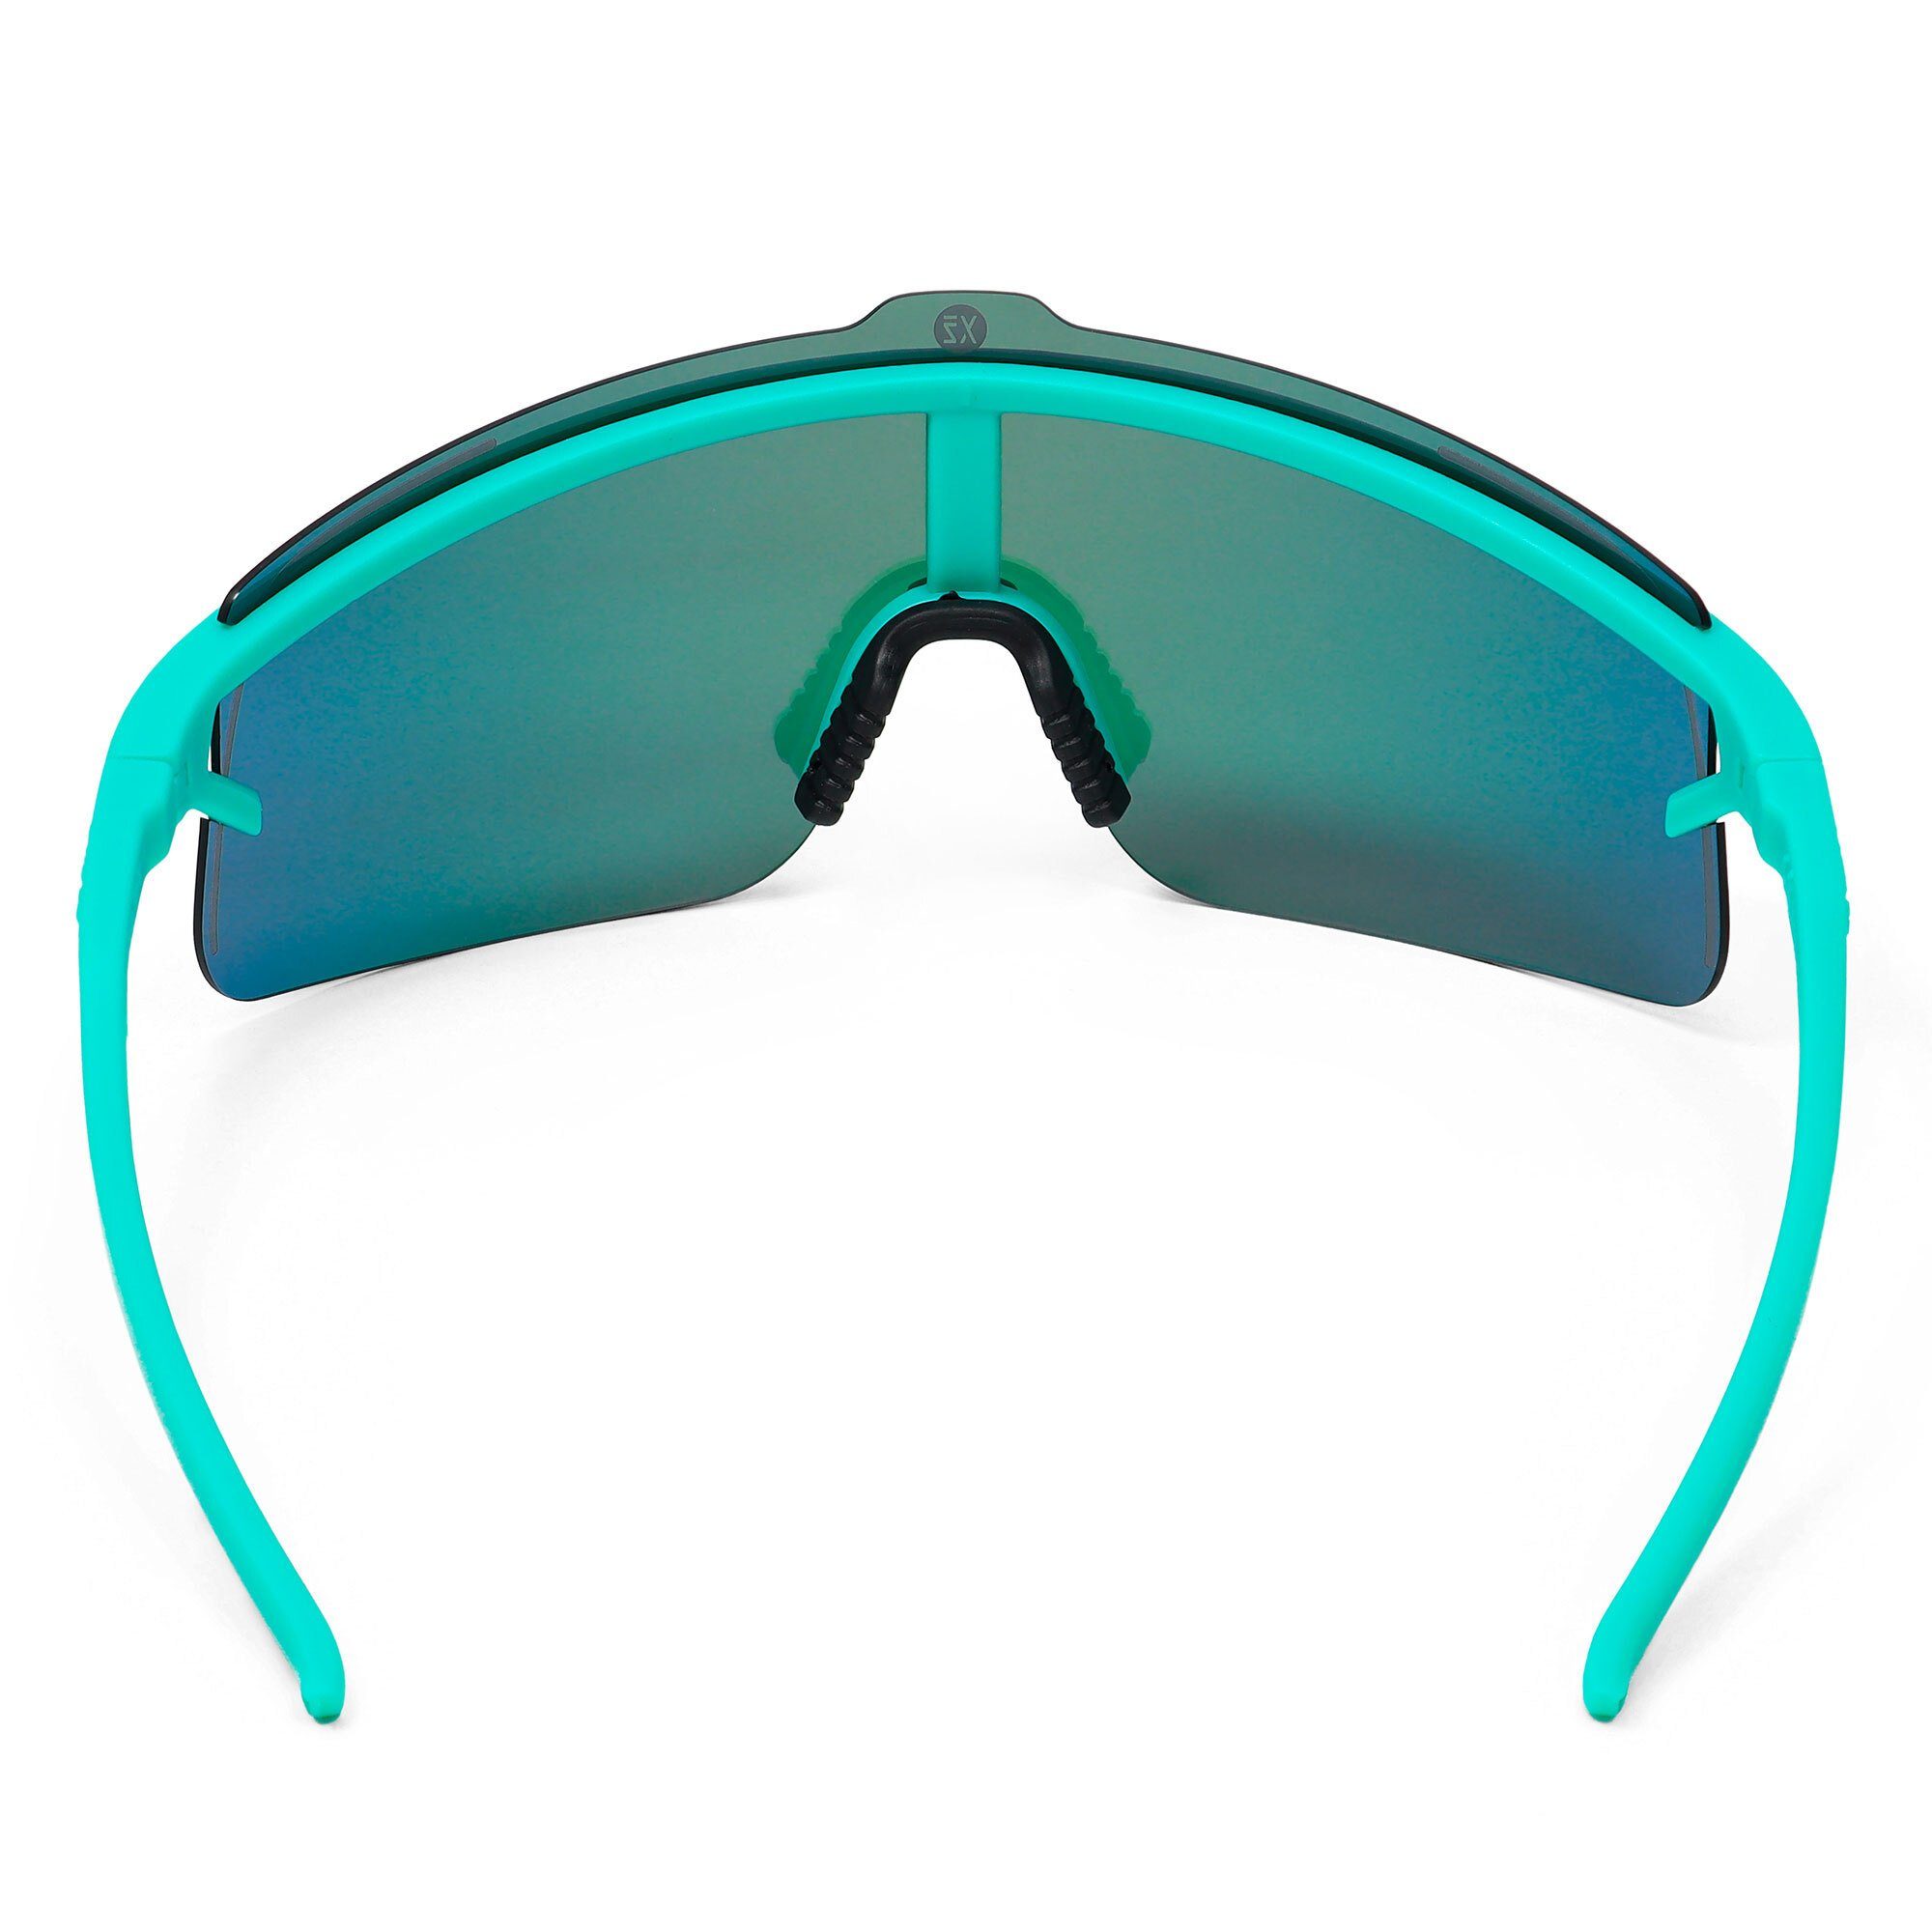 lila Komfort black/silver, Sicht, Erlebe perfekte Sportbrille sport-sonnenbrille / Style und YEAZ SUNSHADE grün